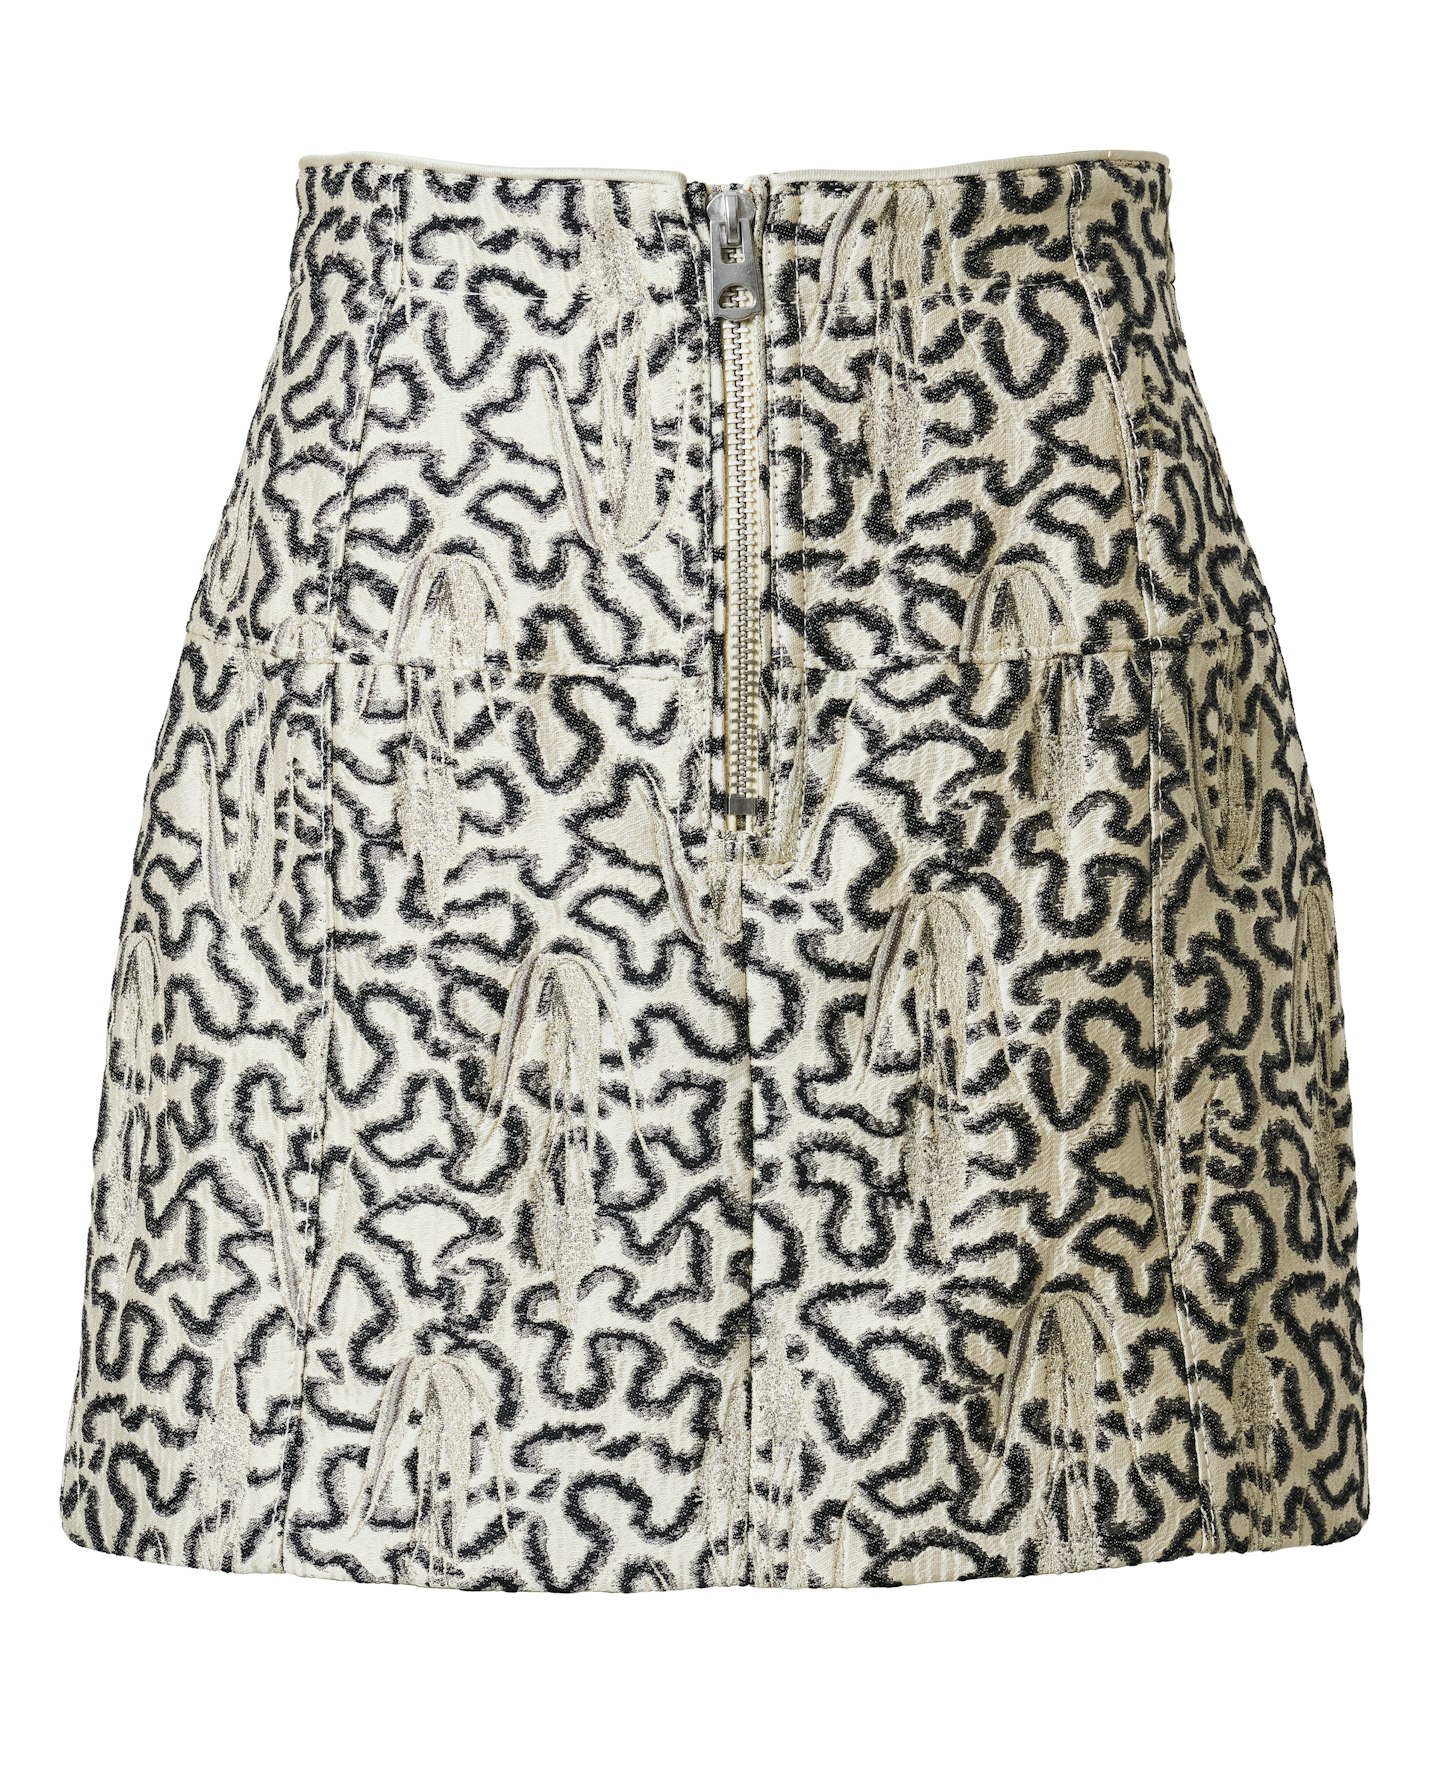 Brocade Skirt, £49.99